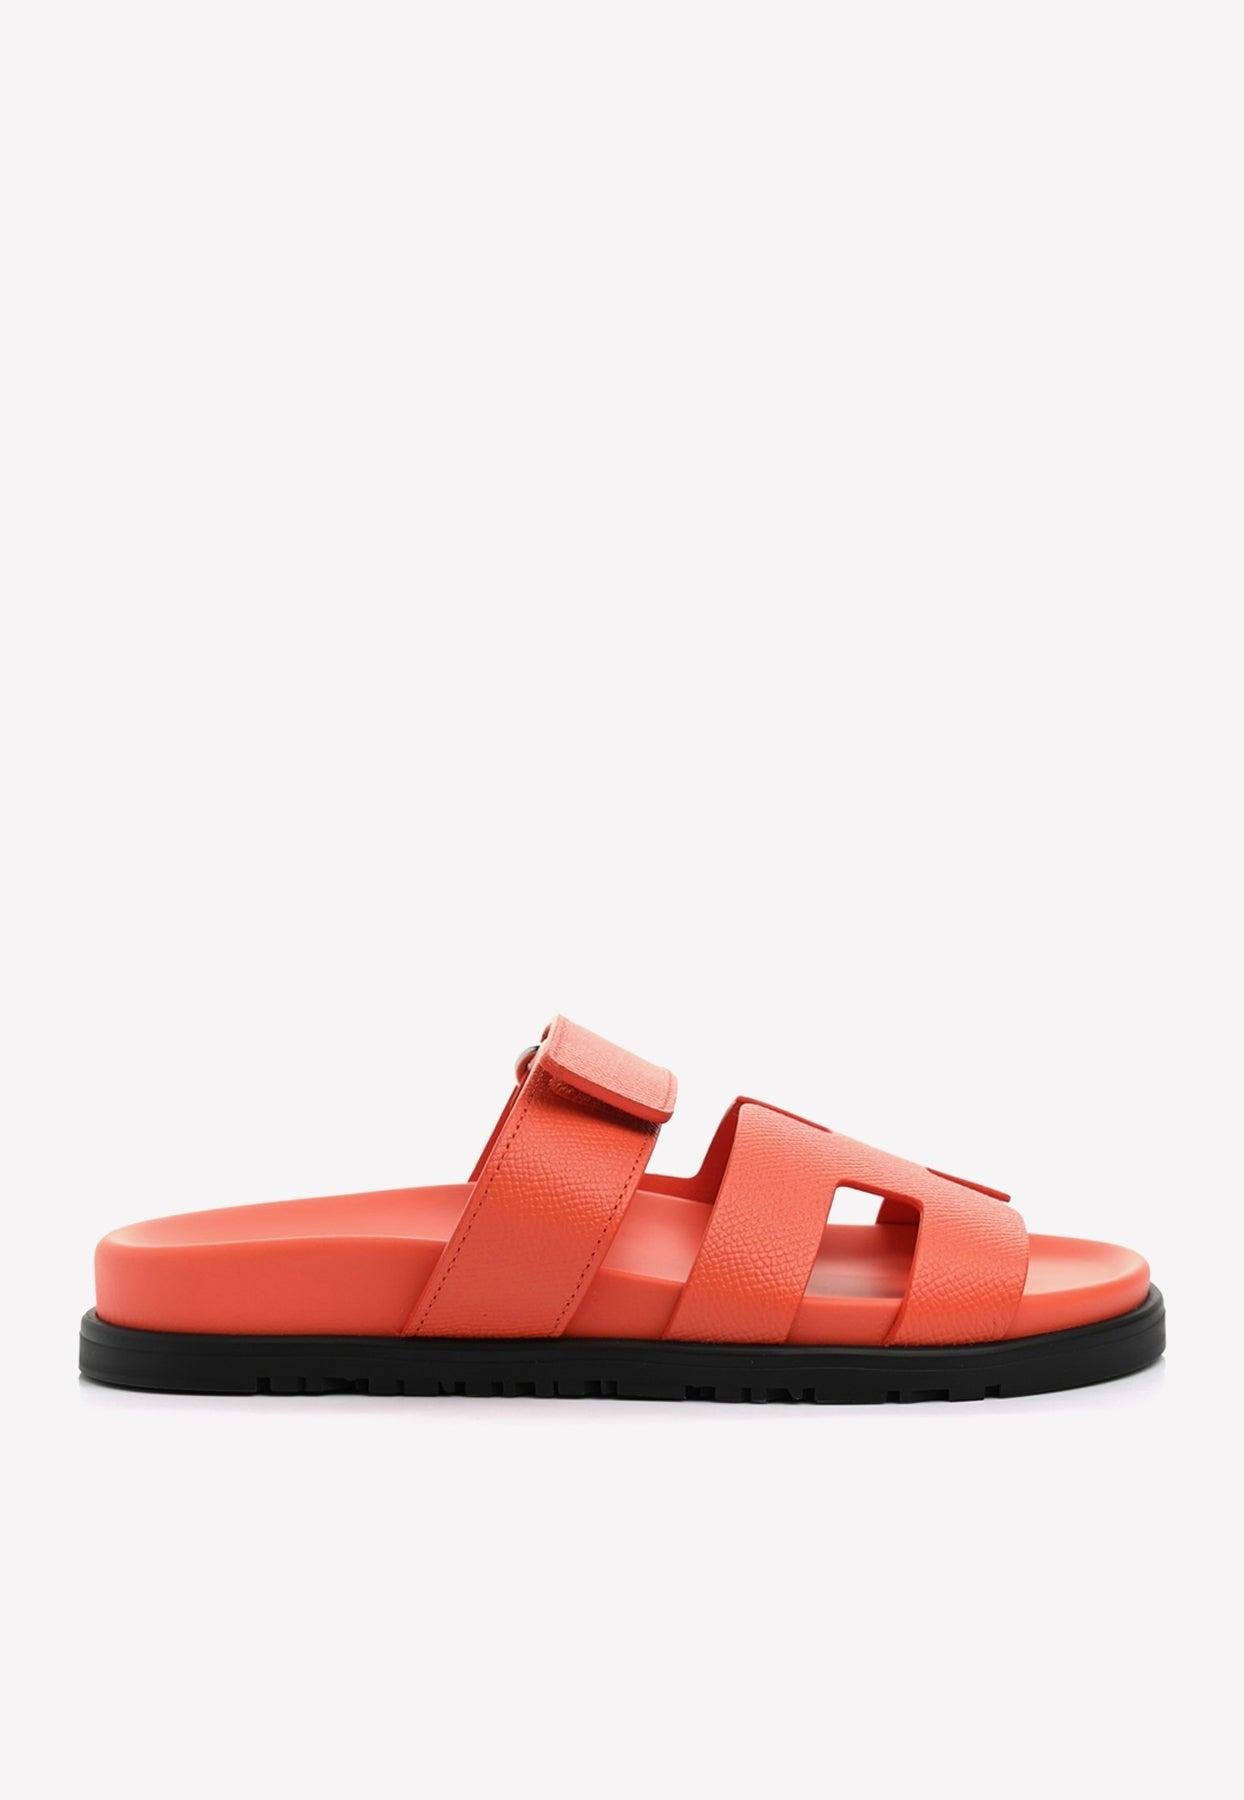 Hermès Chypre Sandals In Calfskin in Red | Lyst Australia